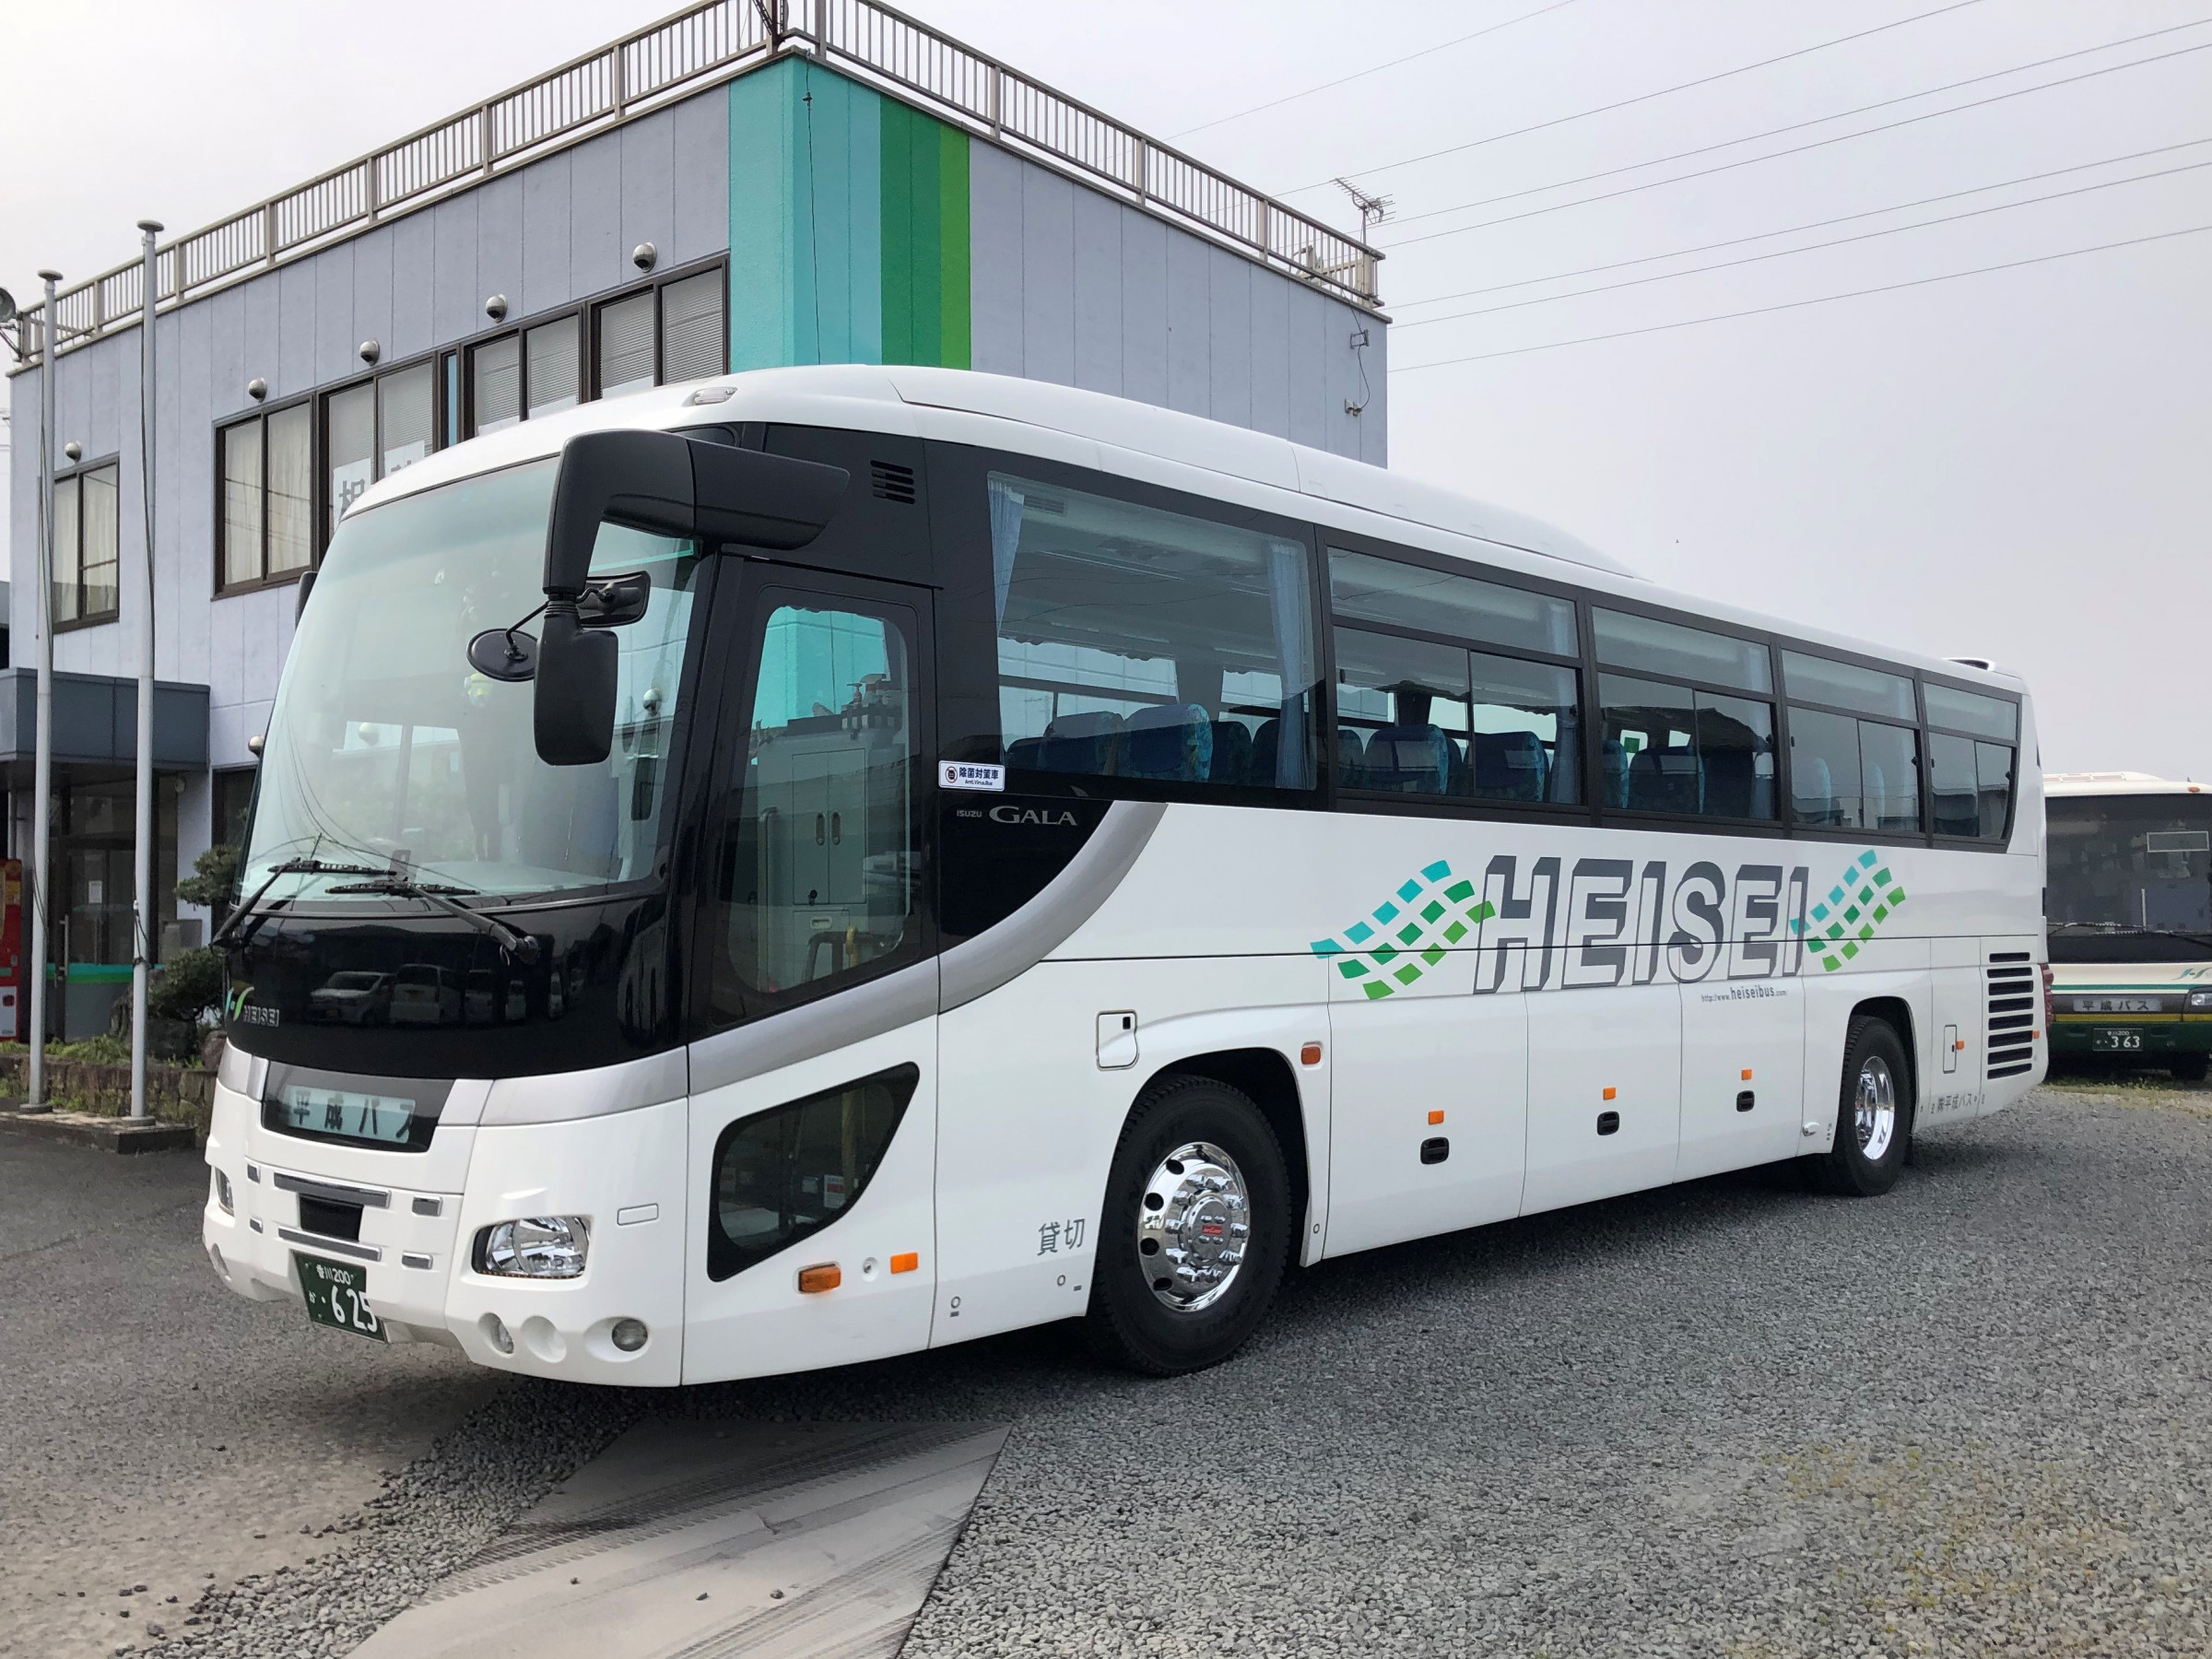 平成バス 香川の貸切バス 観光バスなら令和になっても平成バスへ